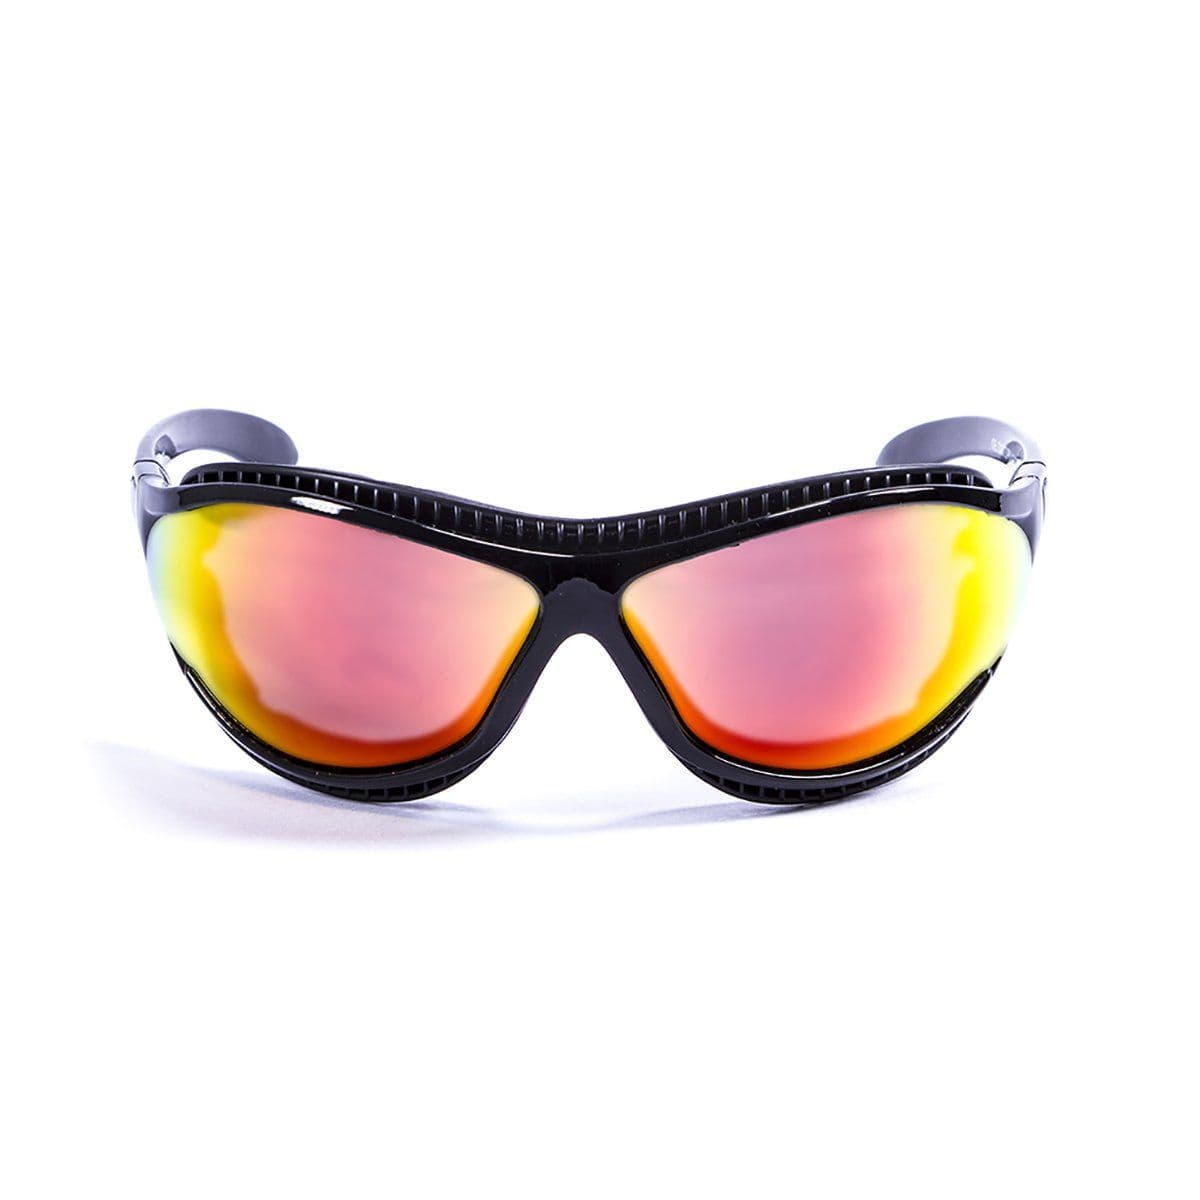 Ocean Tierra de Furgo Water Sport Sunglasses